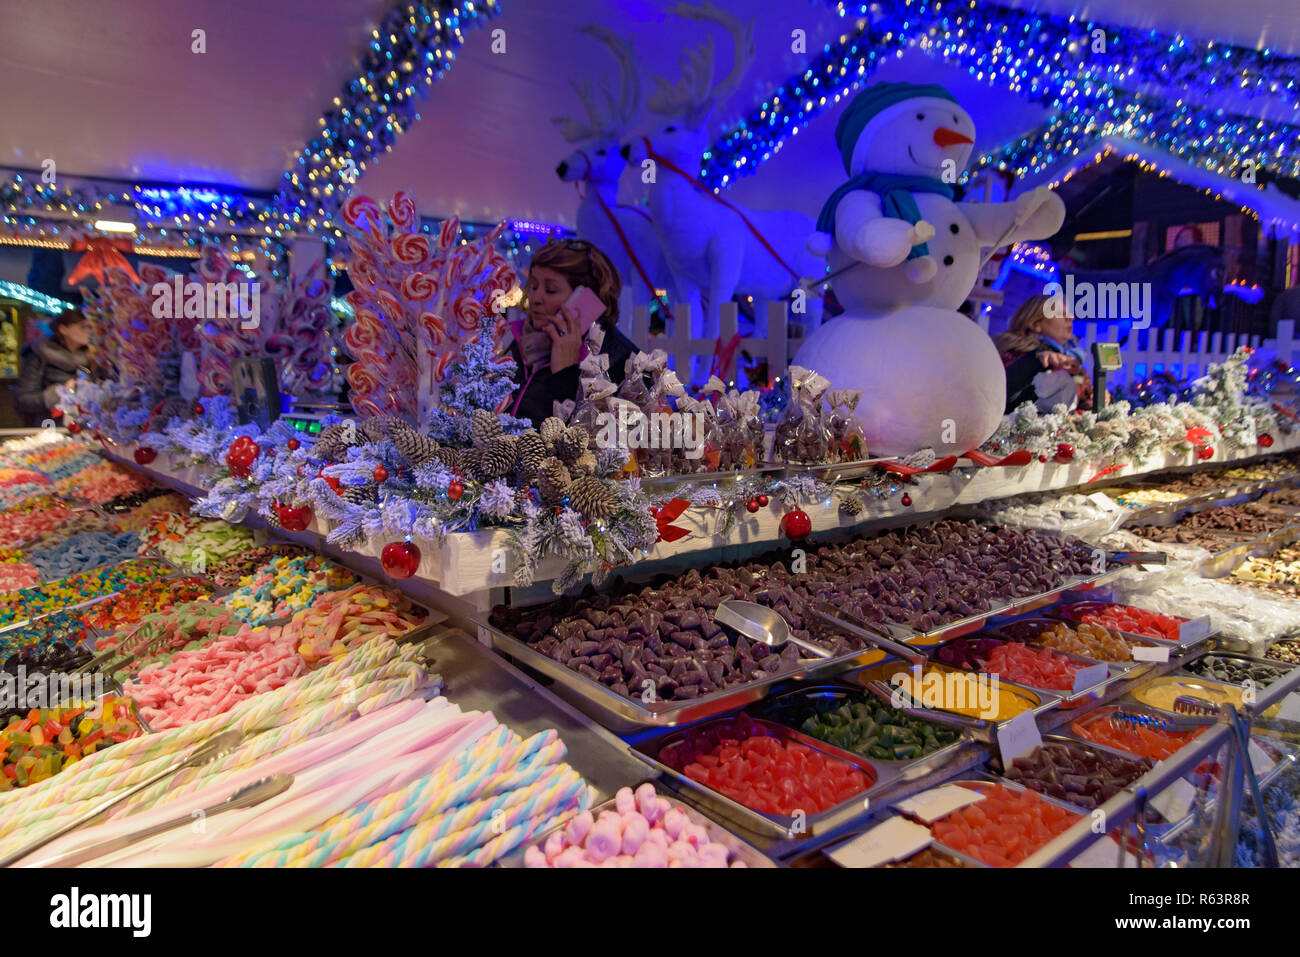 Süße in der Weihnachtsmarkt in Brüssel 2018 Stall, Belgien Stockfoto